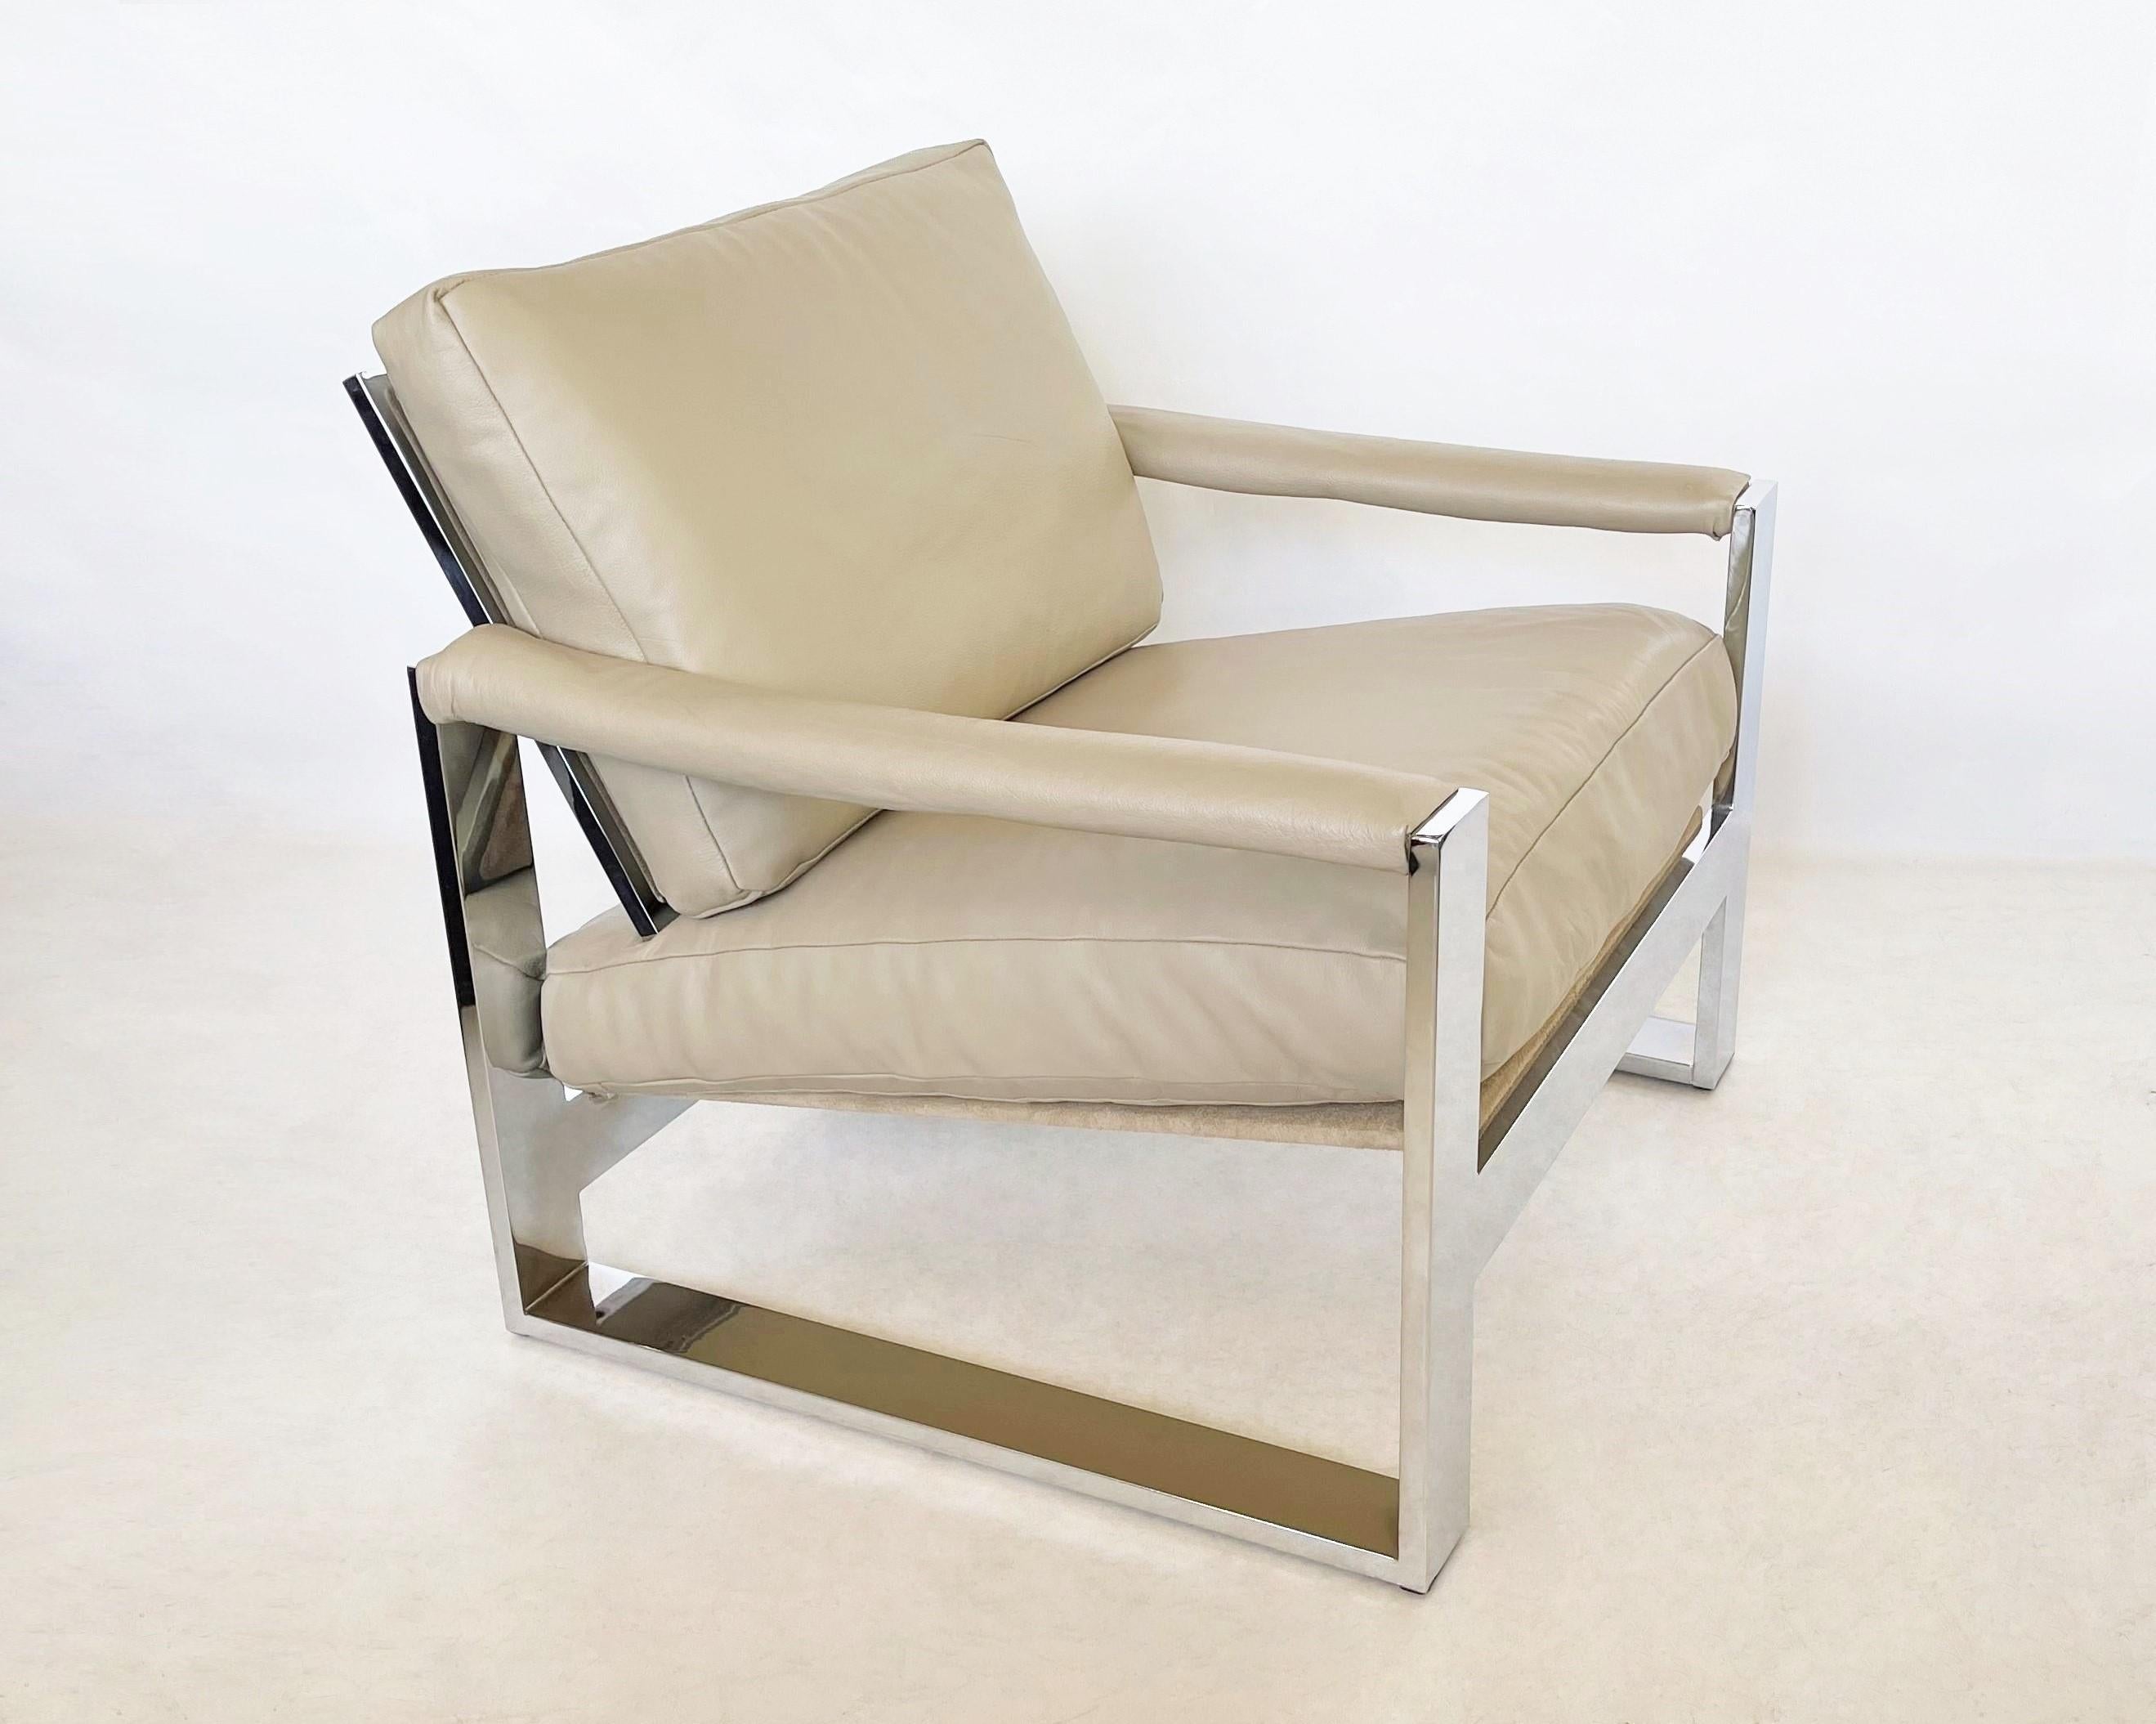 Glamouröses, überdimensioniertes, stromlinienförmiges Stuhlpaar aus einer limitierten Kollektion, die Milo Baughman Classic für Thayer Coggin entworfen hat. Die 1972 entworfenen Stühle haben ein einzigartiges Design mit gepolsterten Armlehnen,